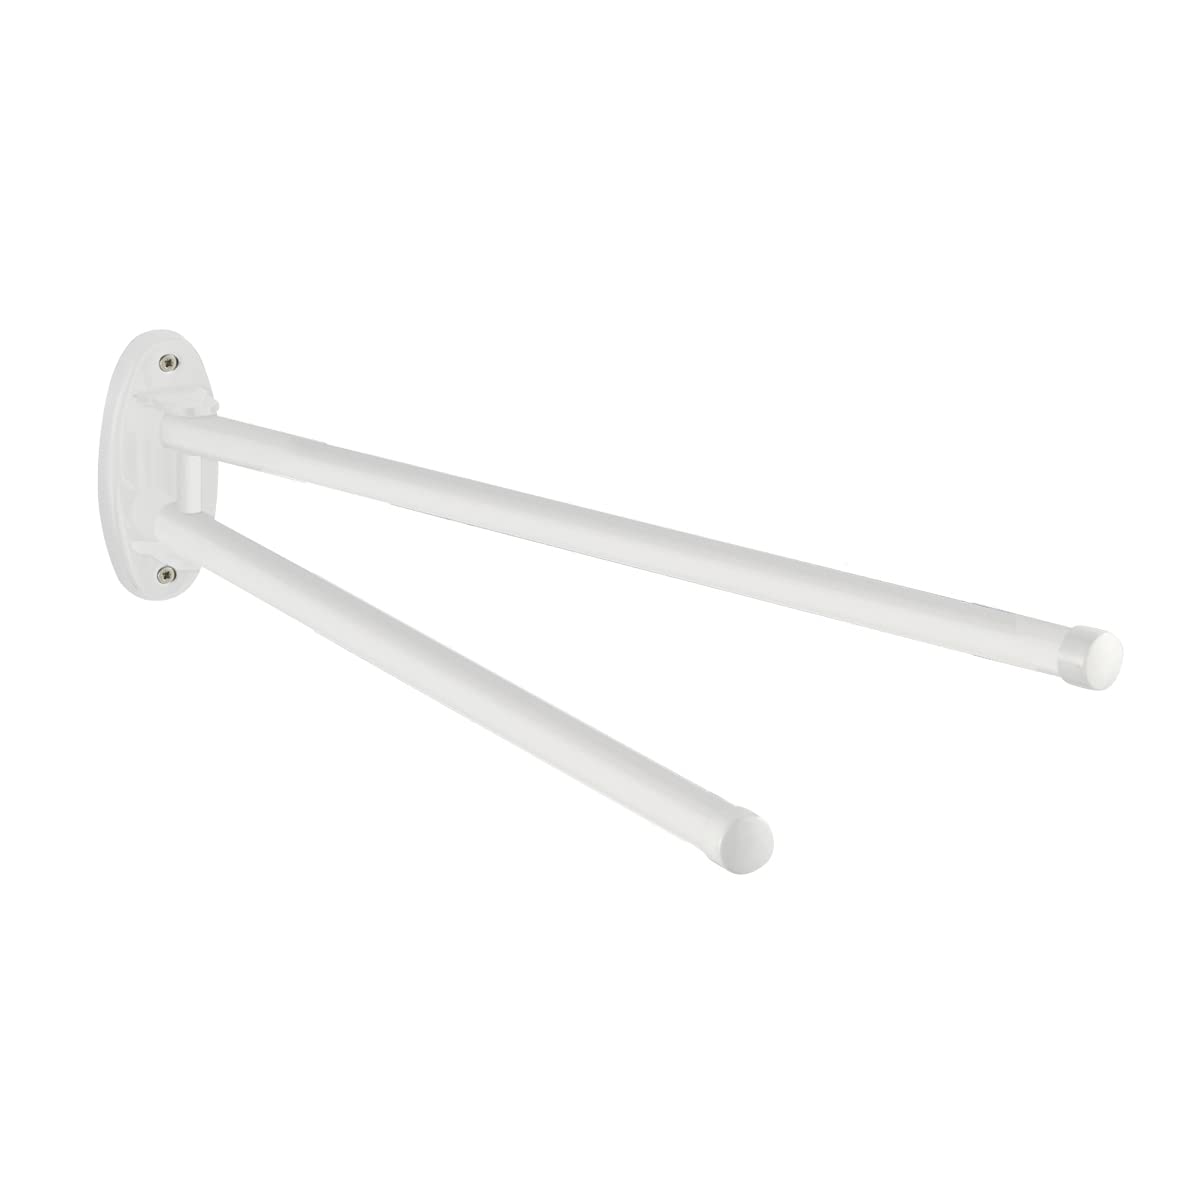 WENKO Handtuchhalter Basic Weiß - 2 bewegliche Arme, Metall, 4.5 x 9.5 x 41 cm, Weiß